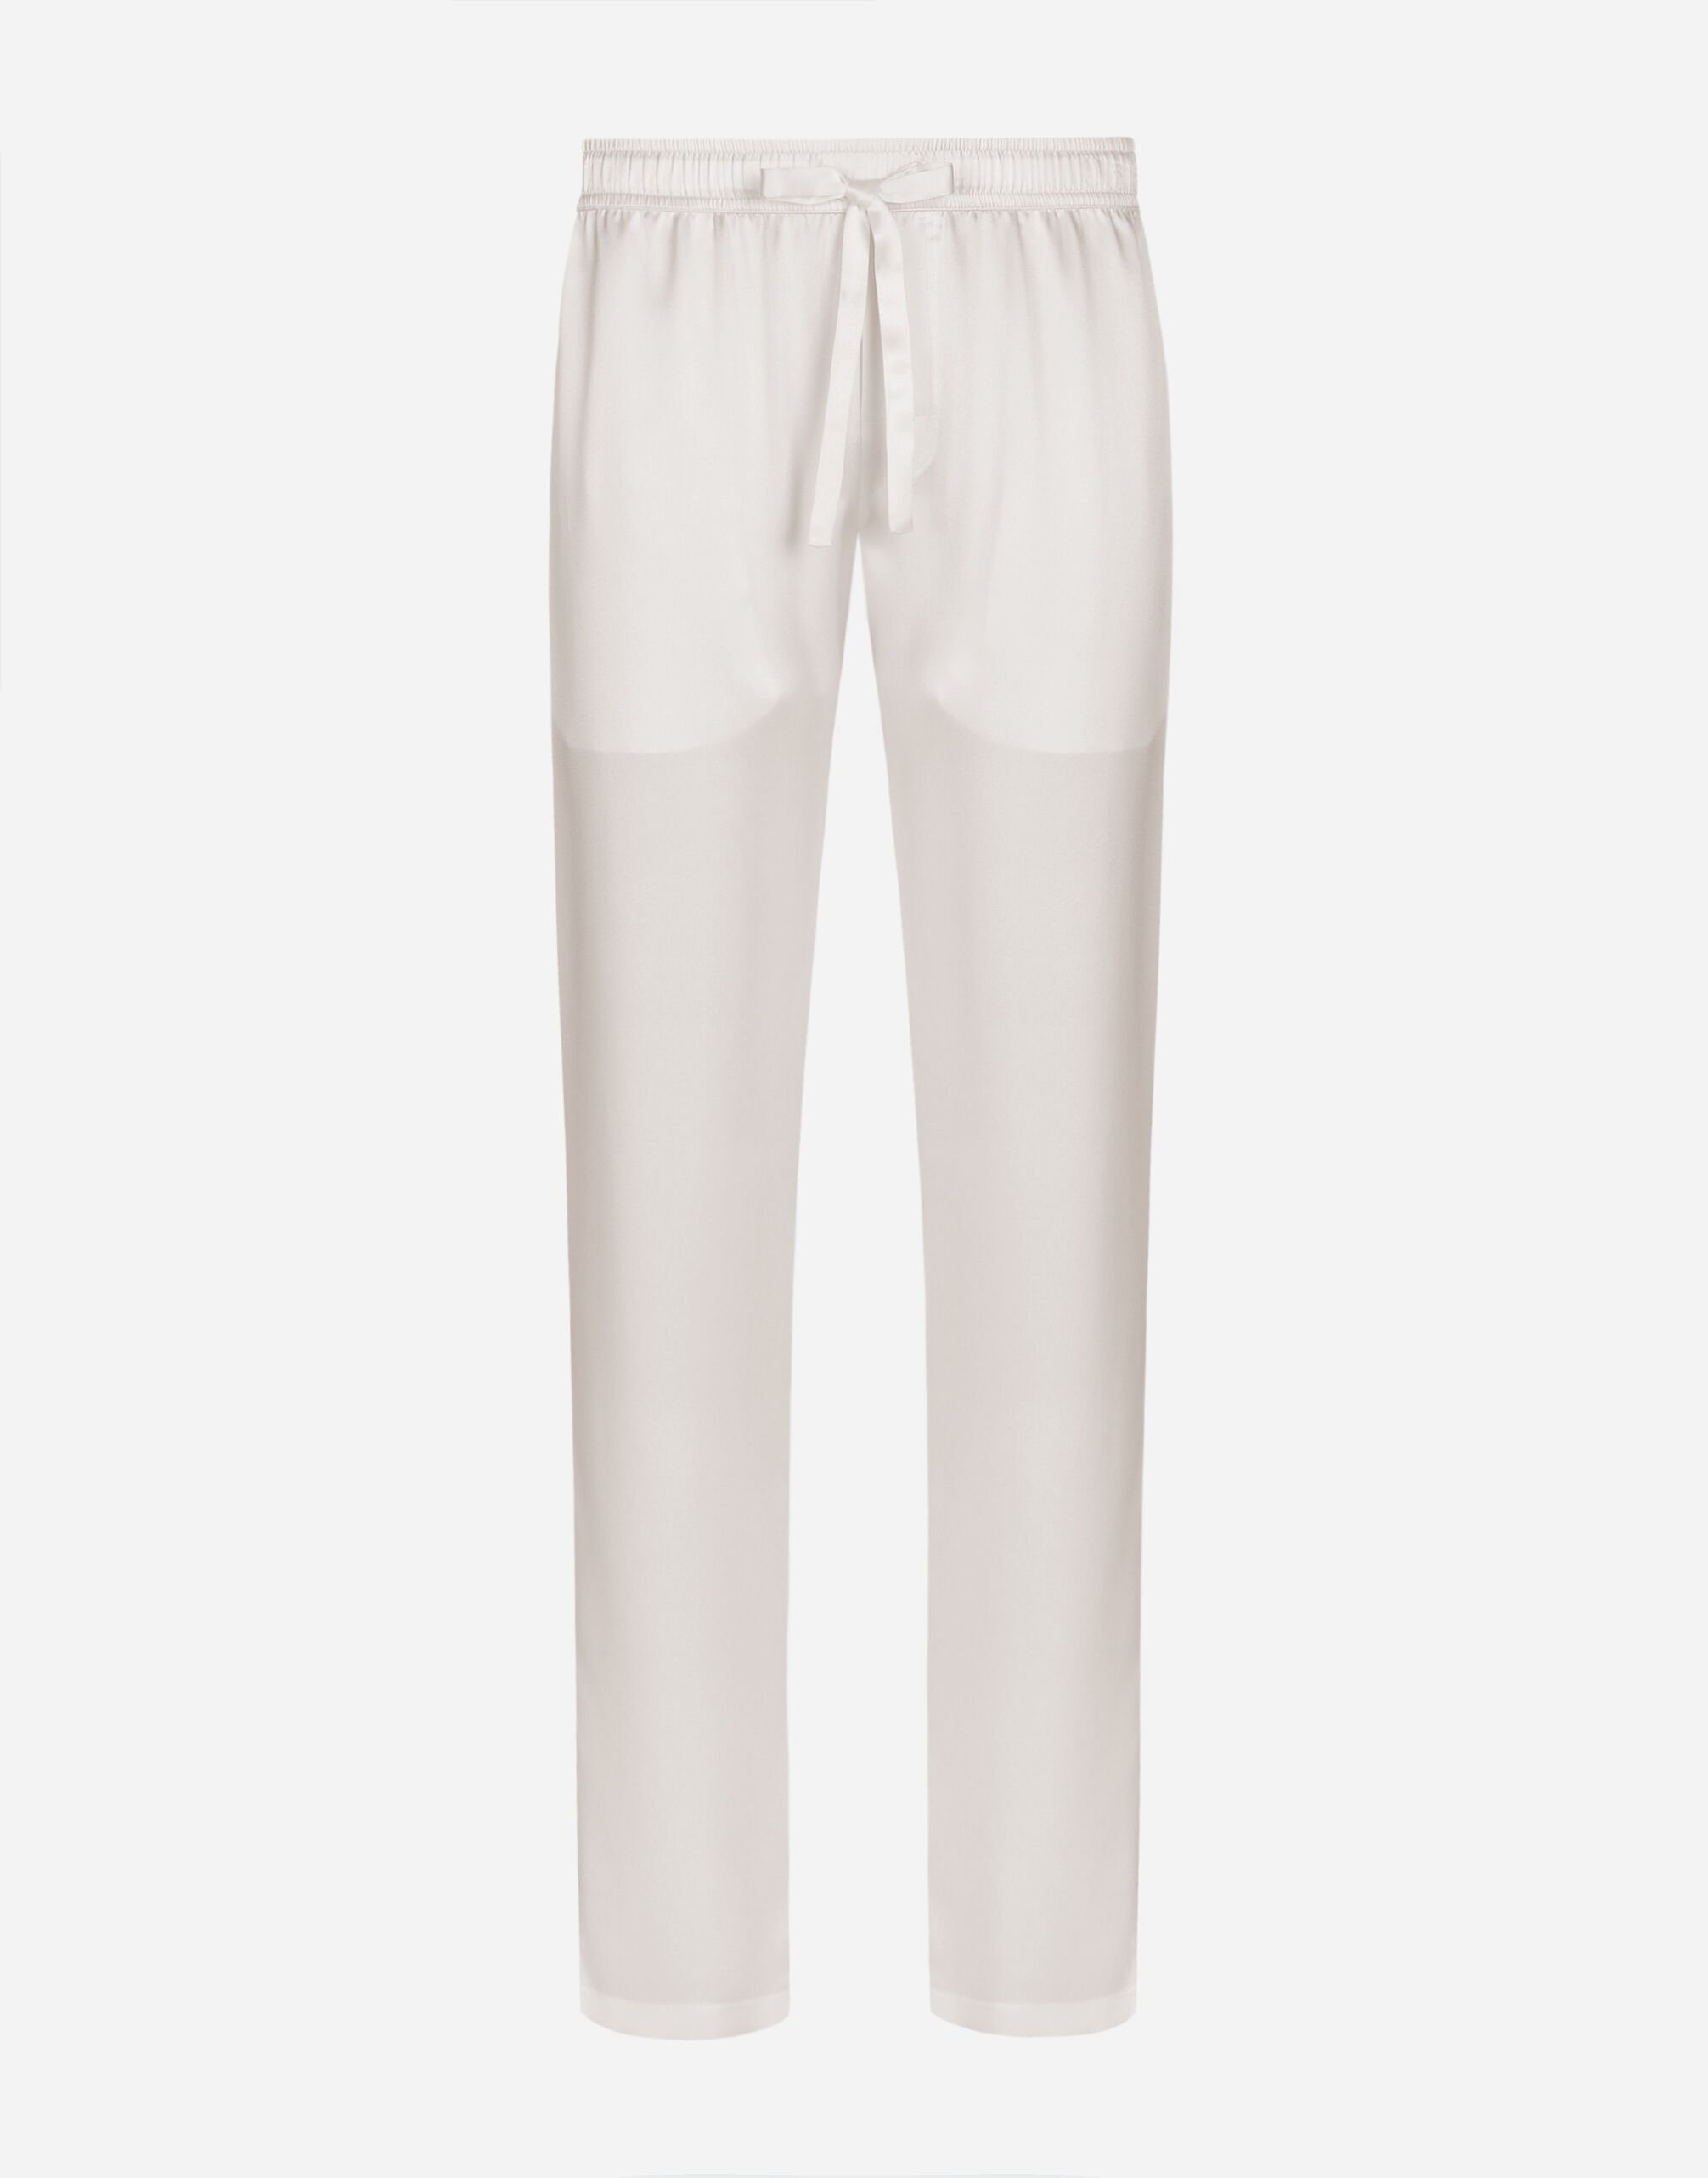 Dolce&Gabbana Silk satin jogging pants with metal DG logo Pale Pink I5955MFU1AU